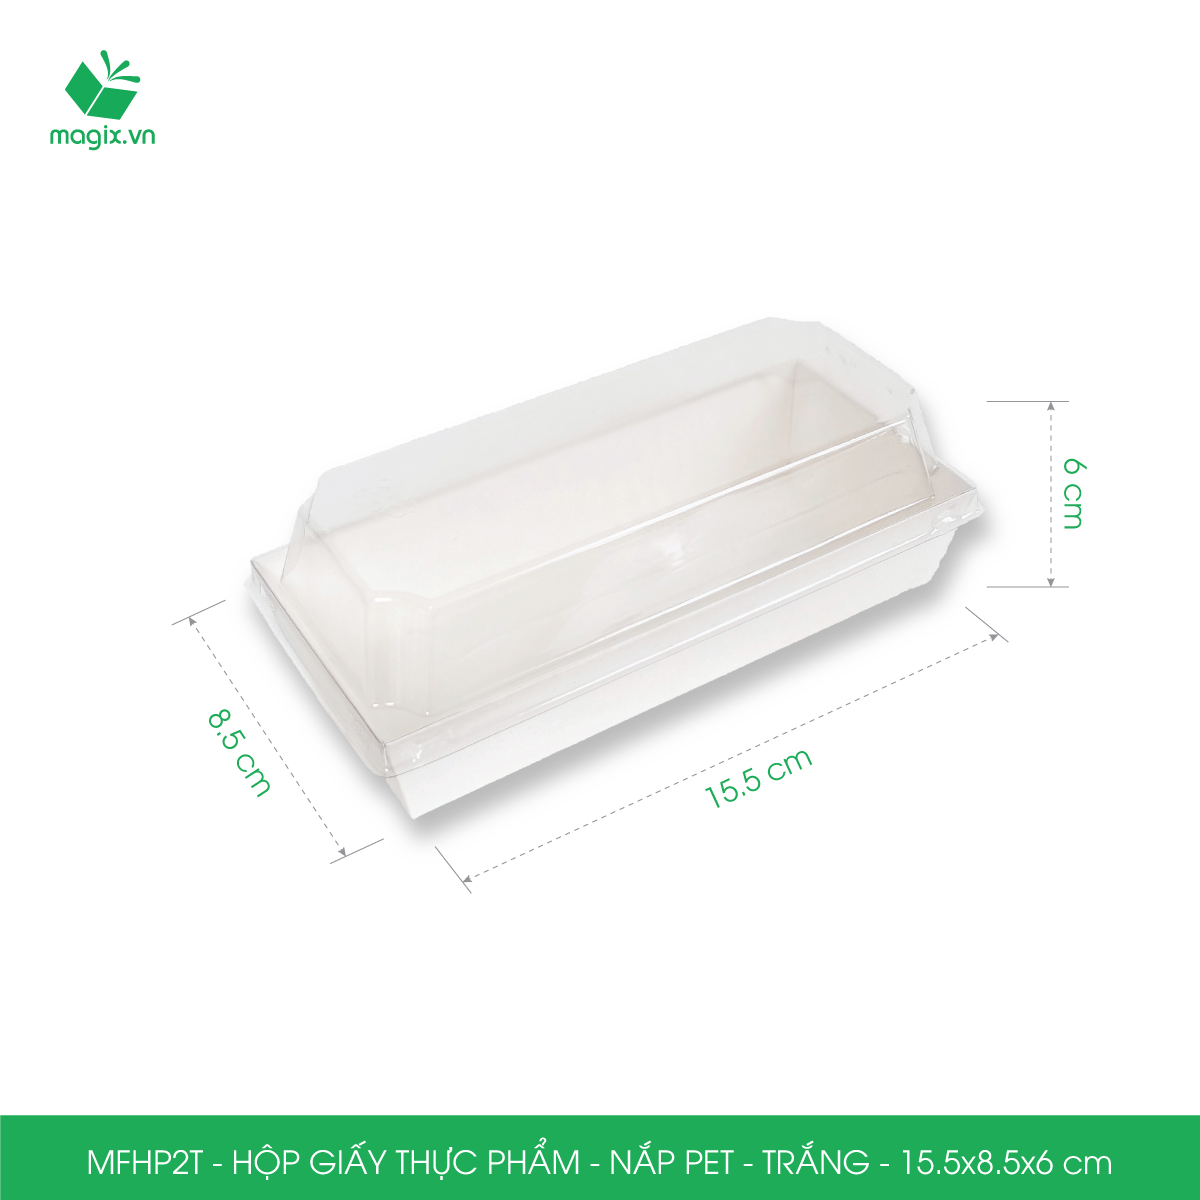 MFHP2T - 15.5x8.5x6 cm - 25 hộp giấy thực phẩm màu trắng nắp Pet, hộp giấy chữ nhật đựng thức ăn, hộp bánh nắp trong